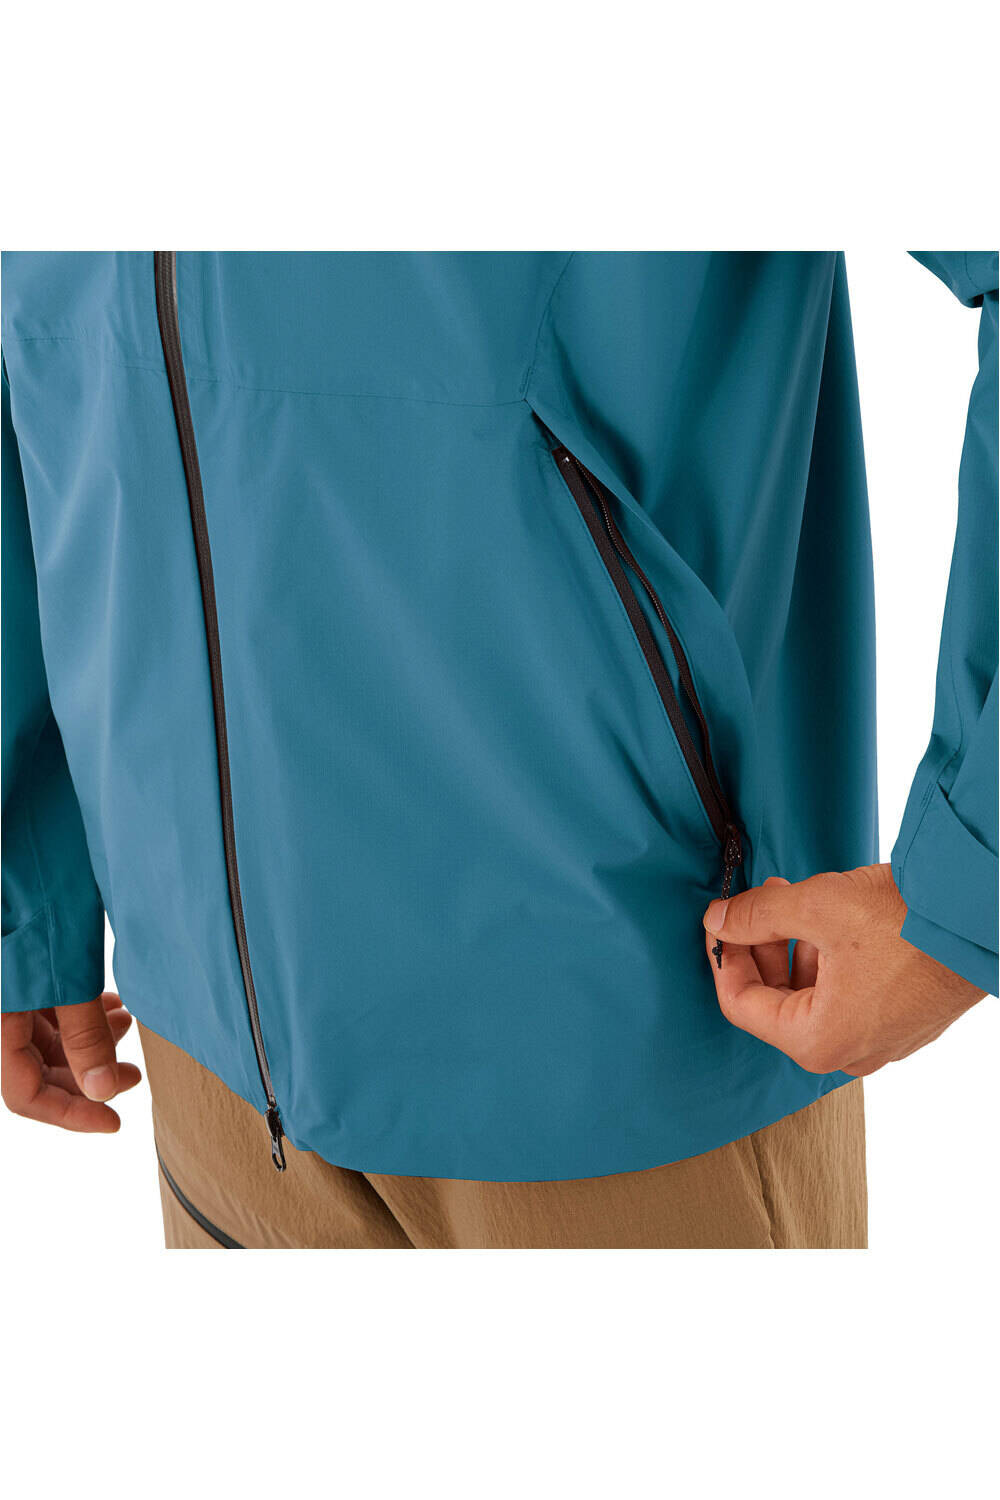 Salomon chaqueta impermeable hombre OUTERPATH 2.5L WP JKT M 04